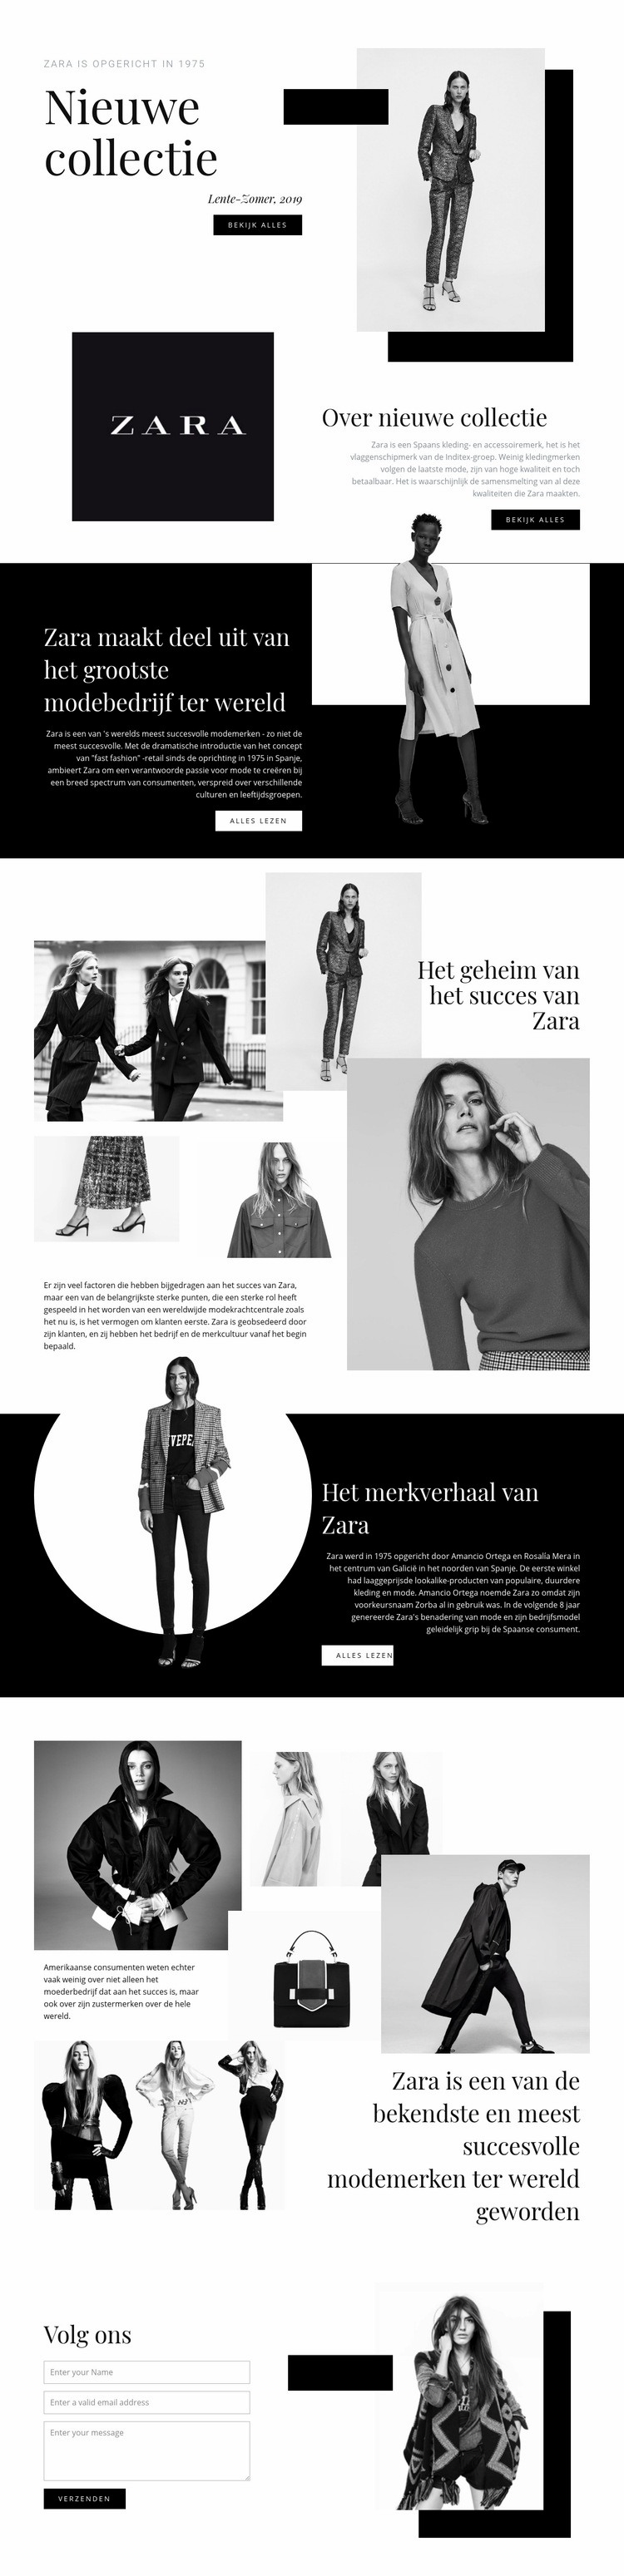 Zara collectie Website ontwerp